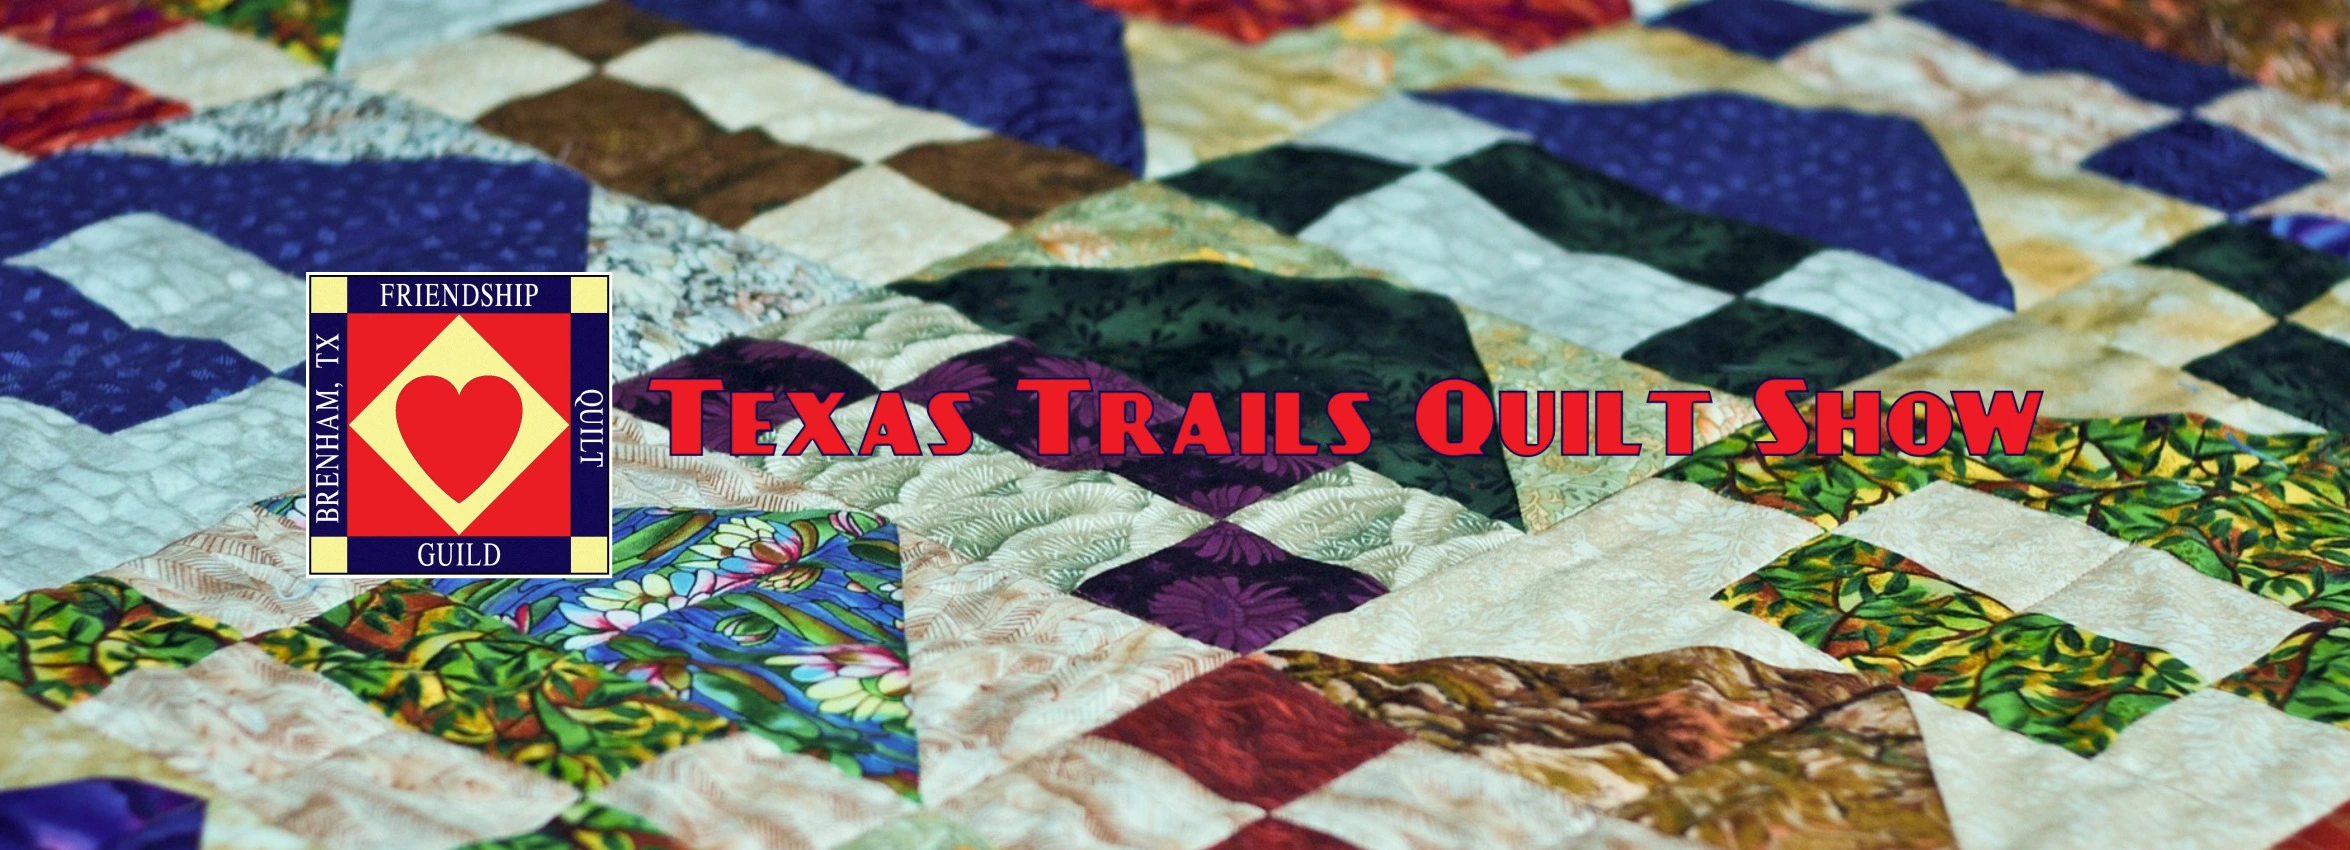 Texas-Trails-Quilt-Show_desktop_ET